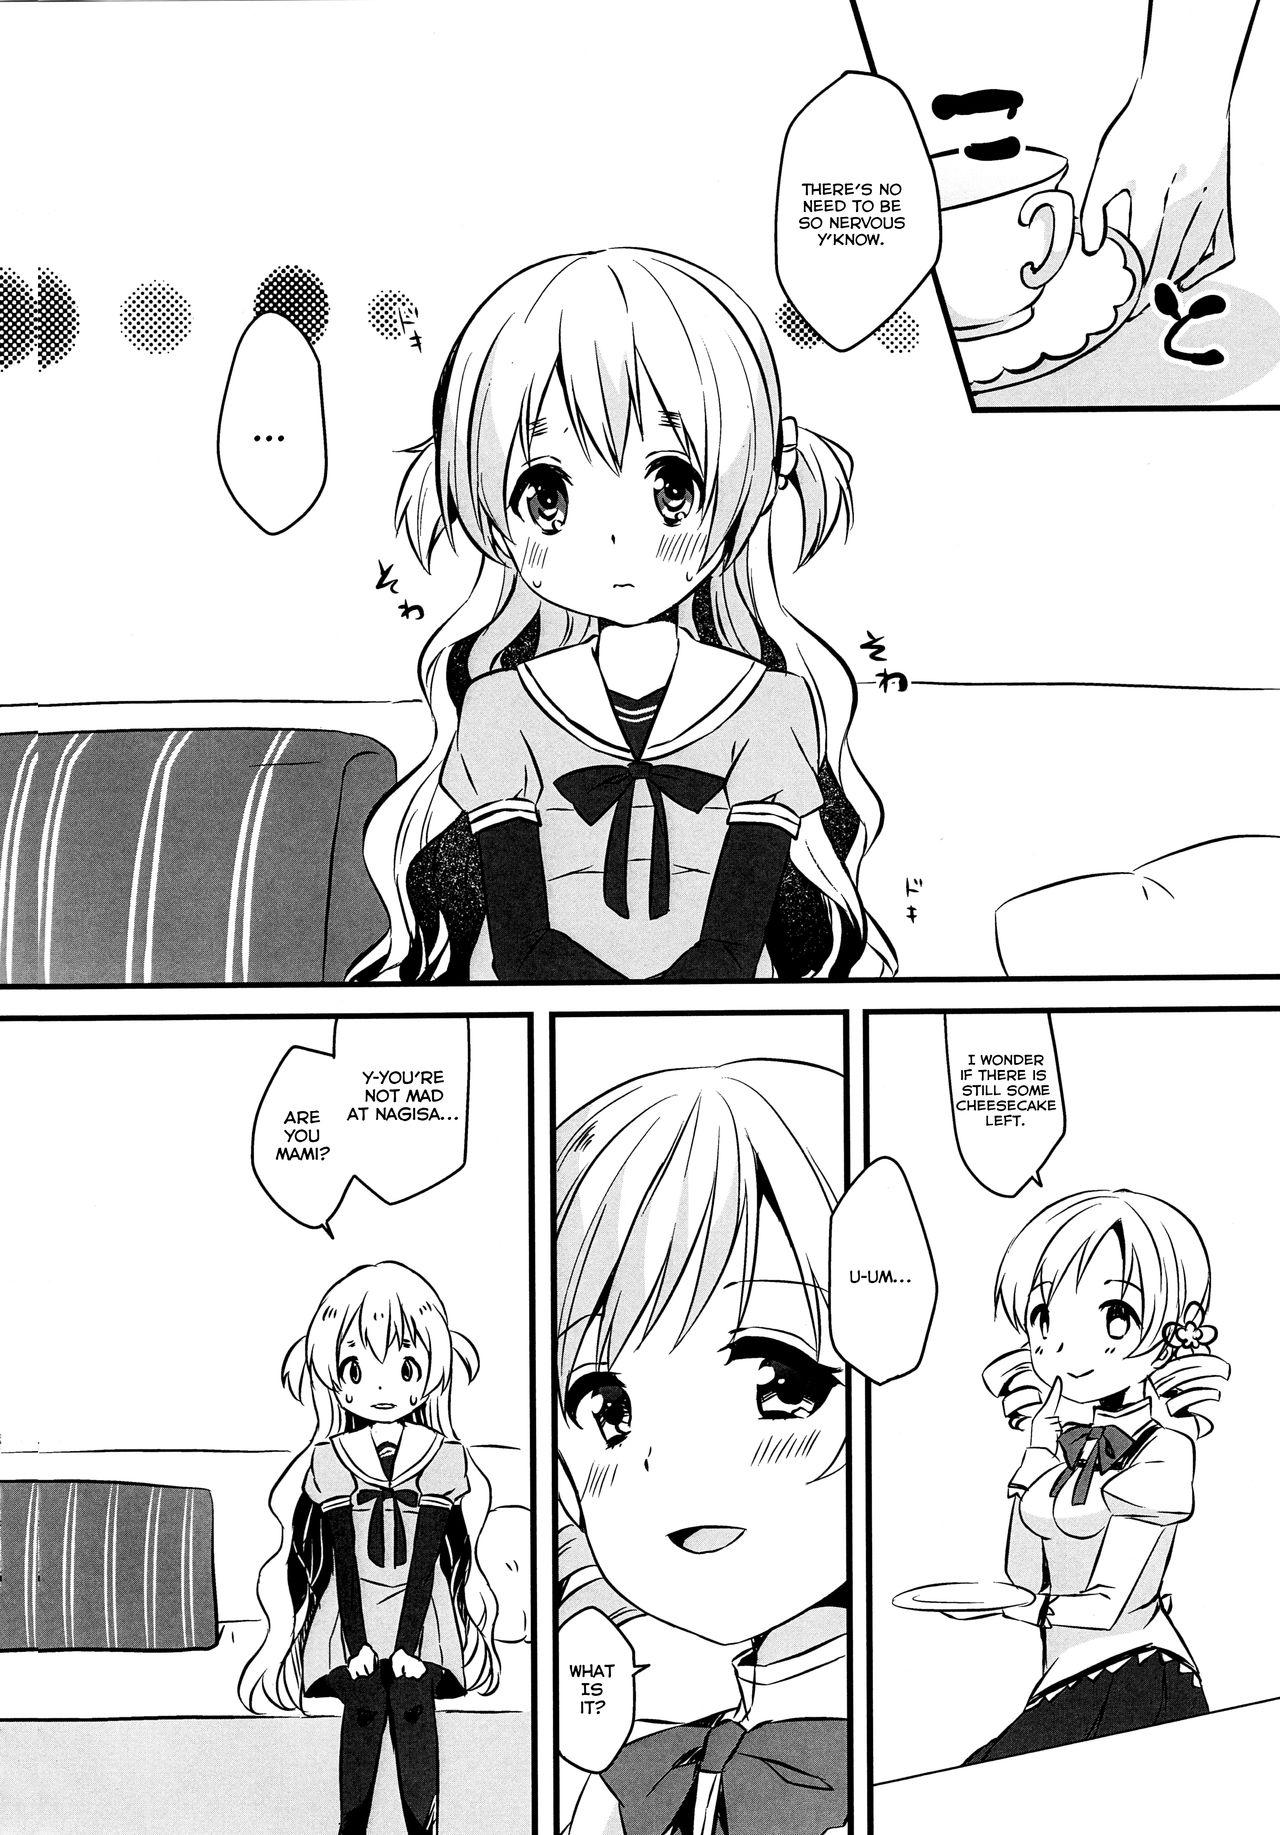 Babysitter Nagisa wa Mami ga Daisuki nanodesu! - Puella magi madoka magica Long - Page 3